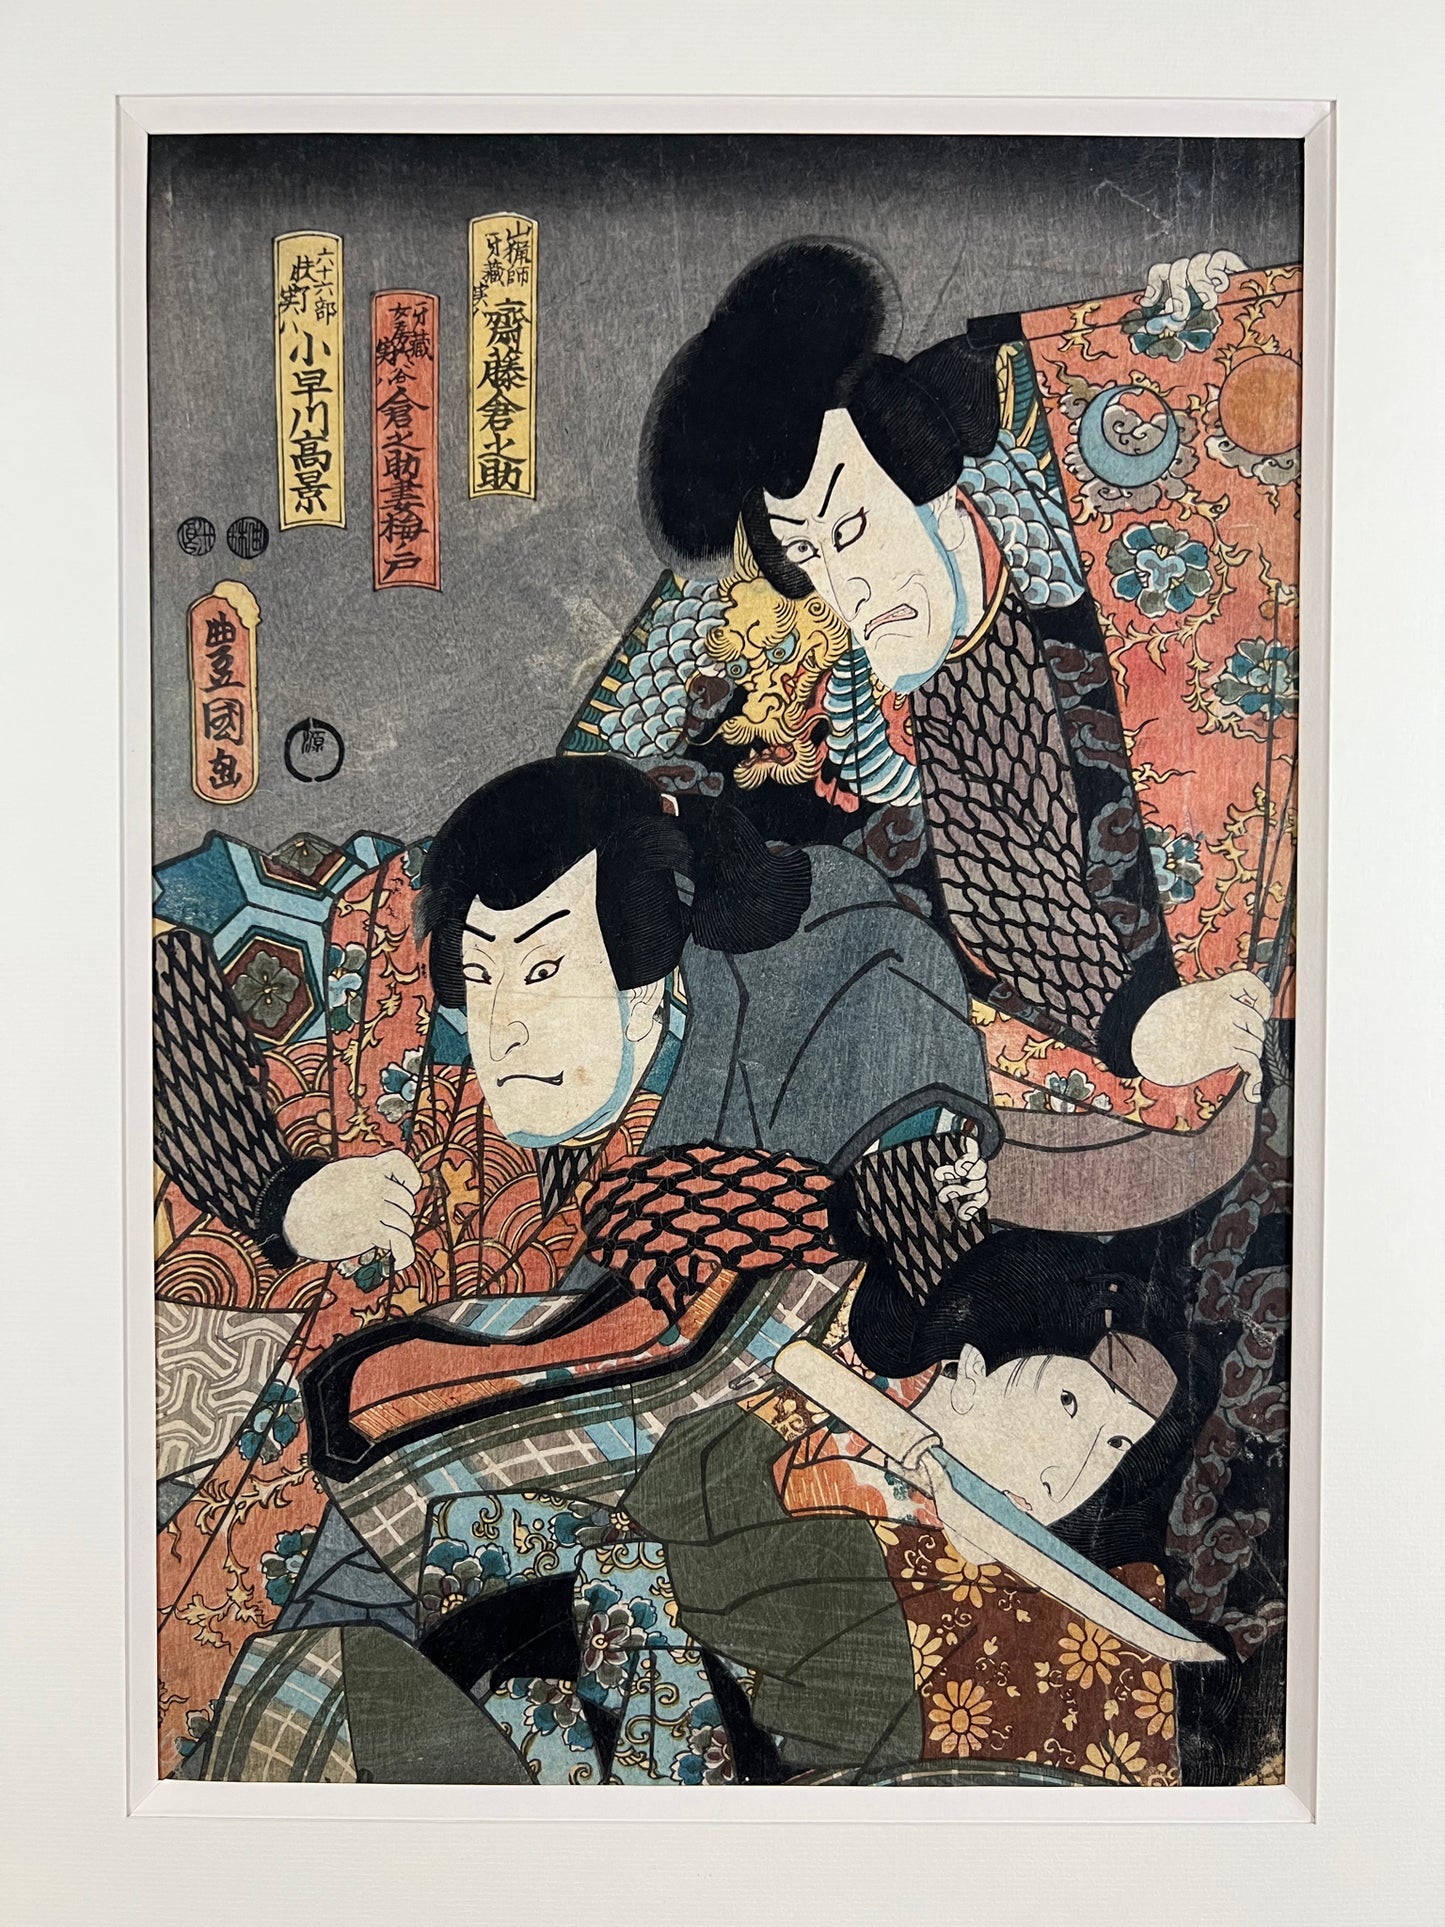 estampe japonaise originale de Kunisada représentant deus samouraïs et une femme dans une pièce de théâtre kabuki